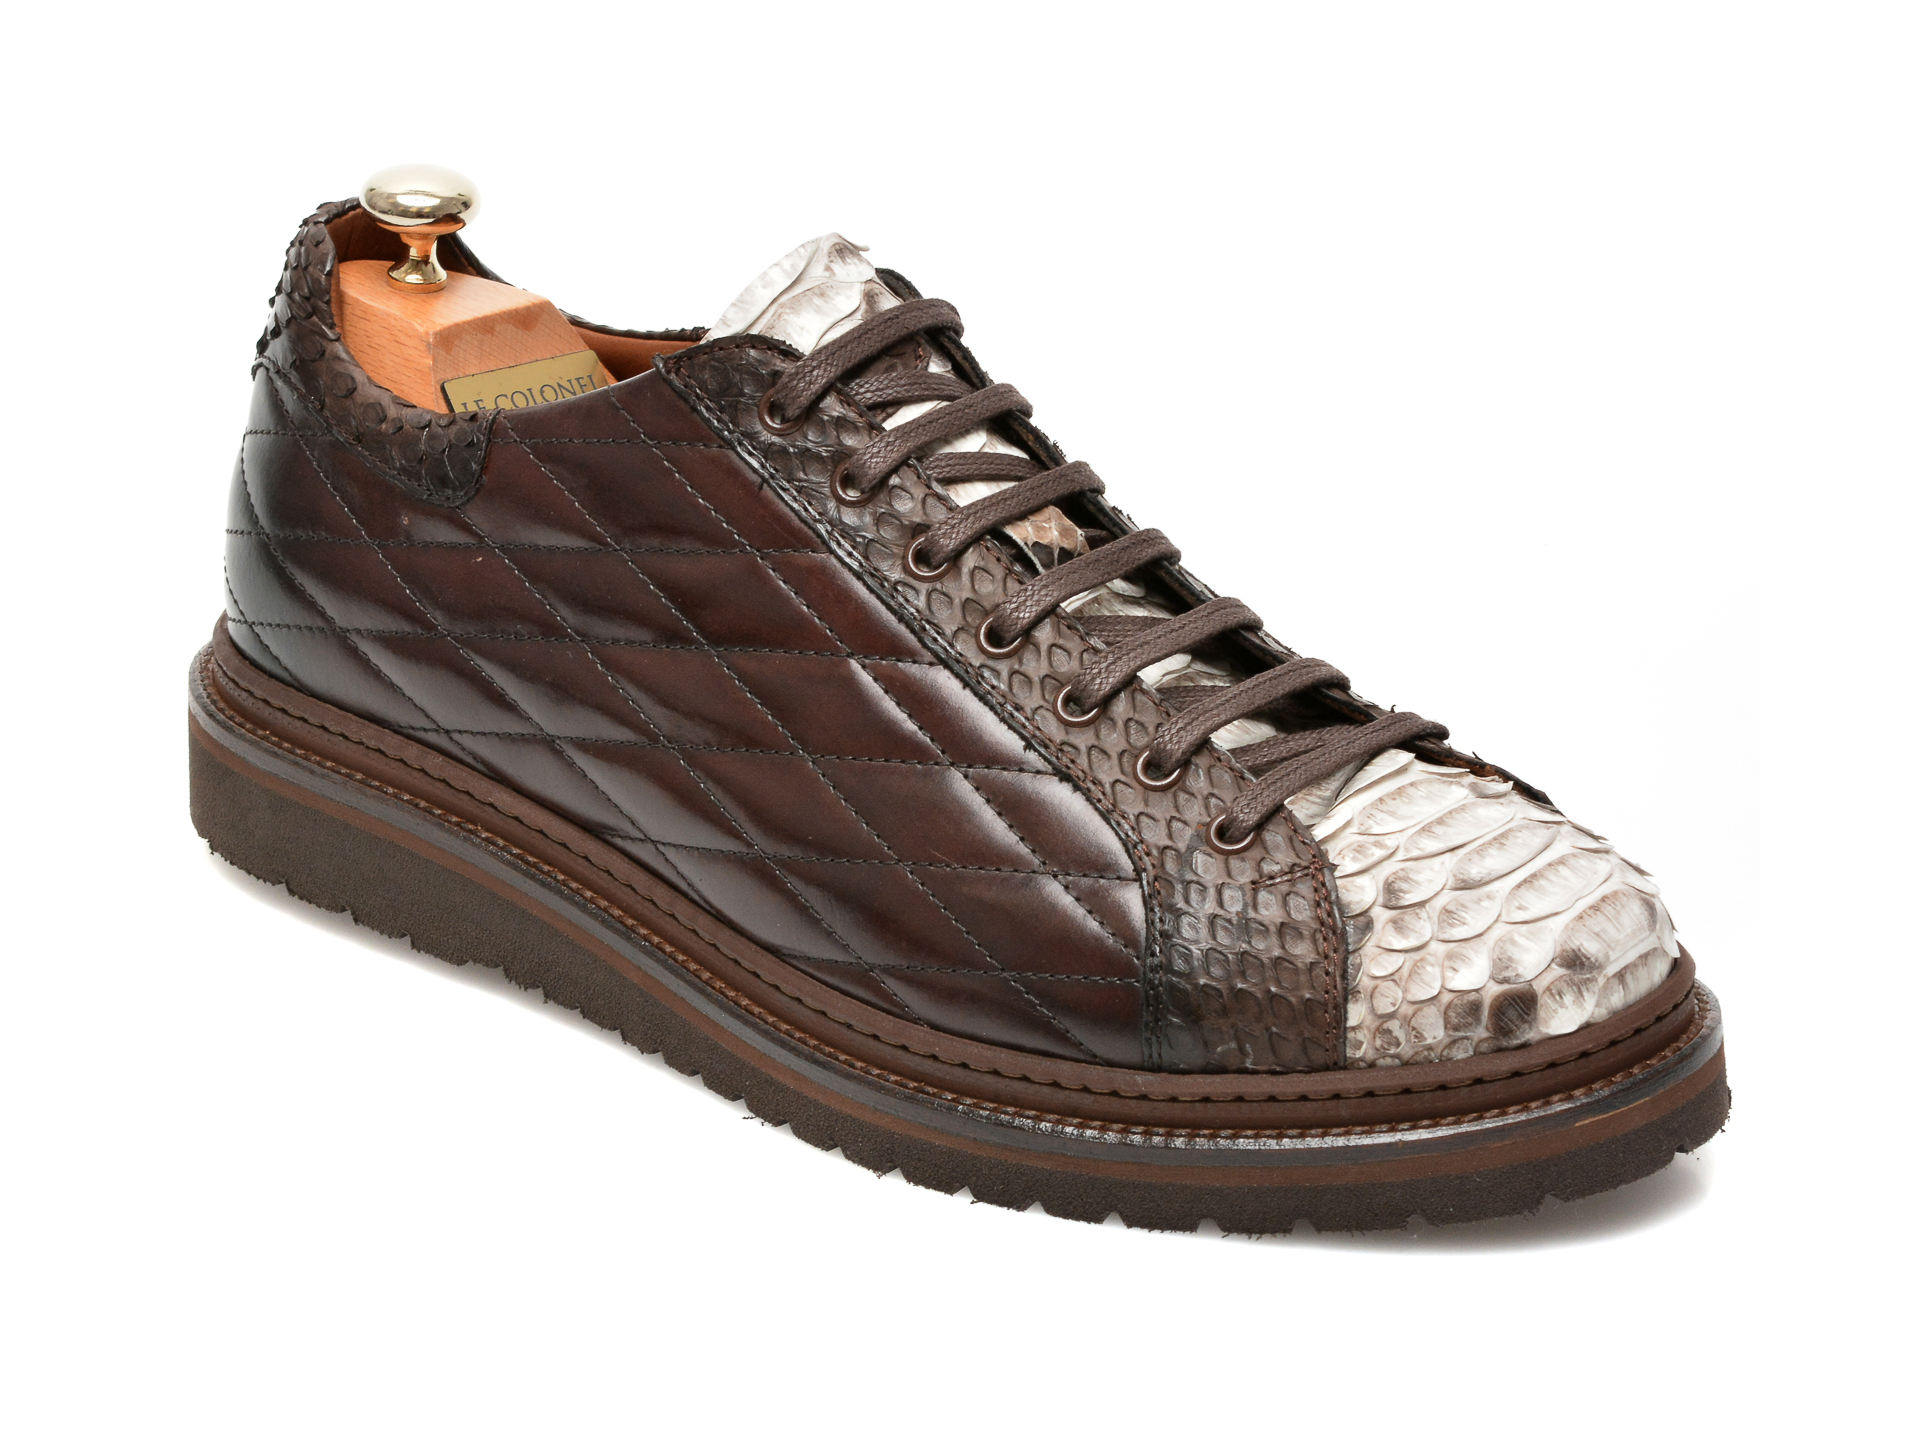 Pantofi LE COLONEL maro, 64802, din piele naturala Le Colonel Le Colonel